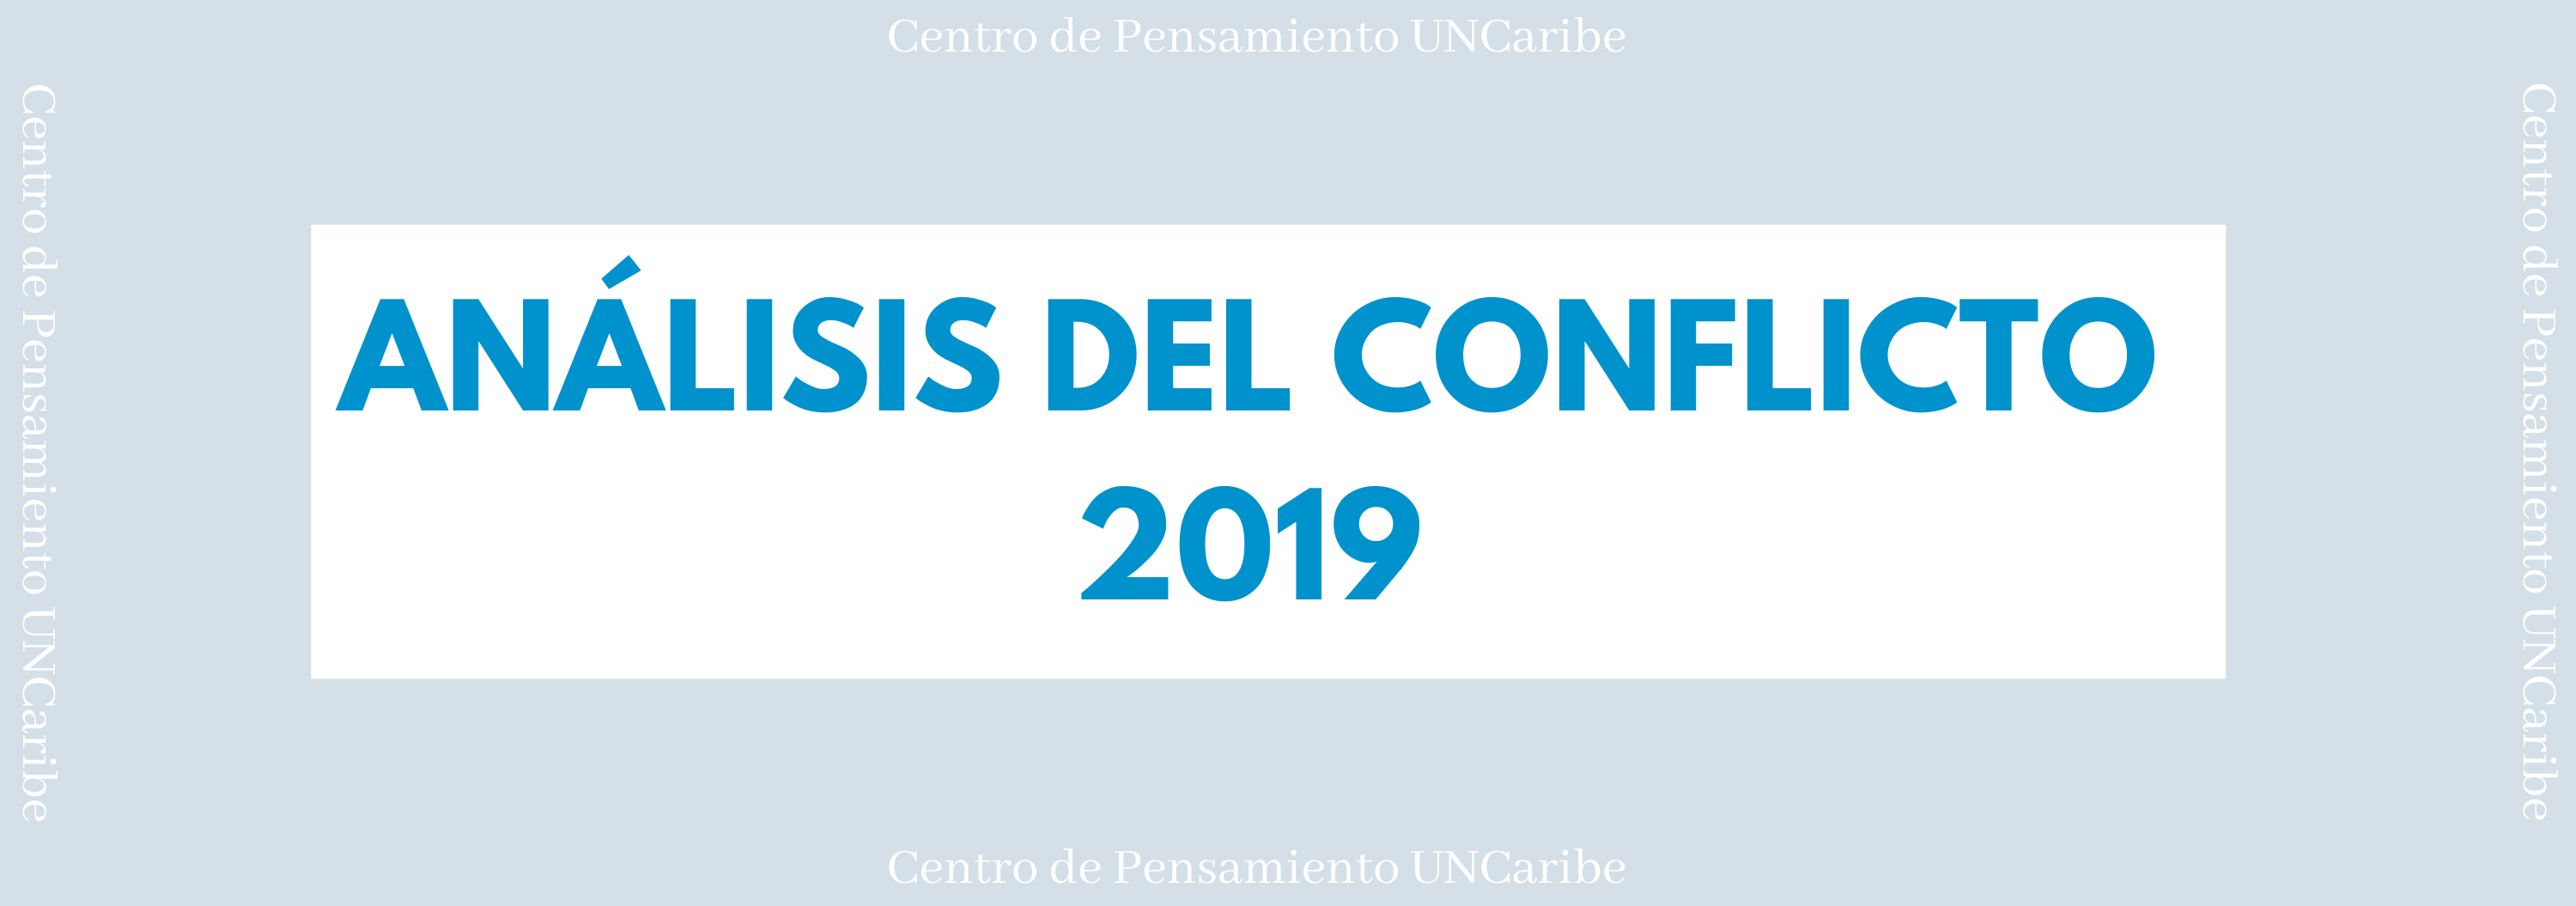 Banner análisis del conflicto 2019